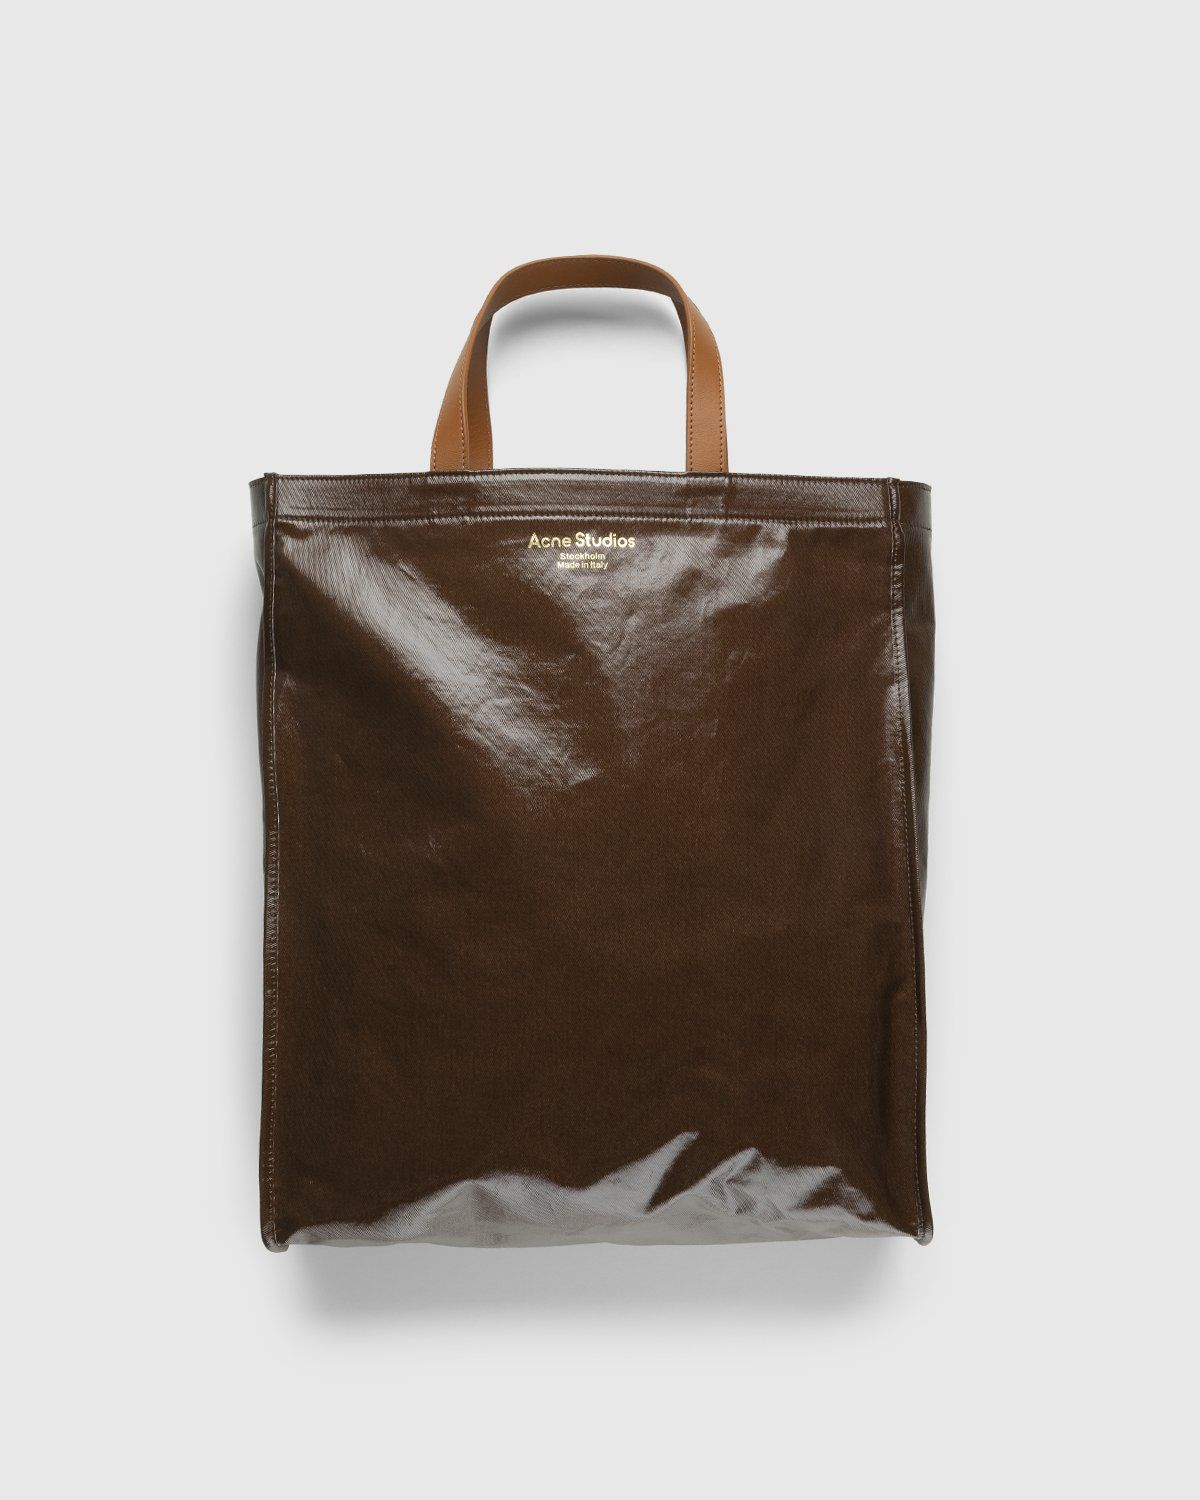 Acne Studios – Shiny Tote Bag Brown - Tote Bags - Brown - Image 1